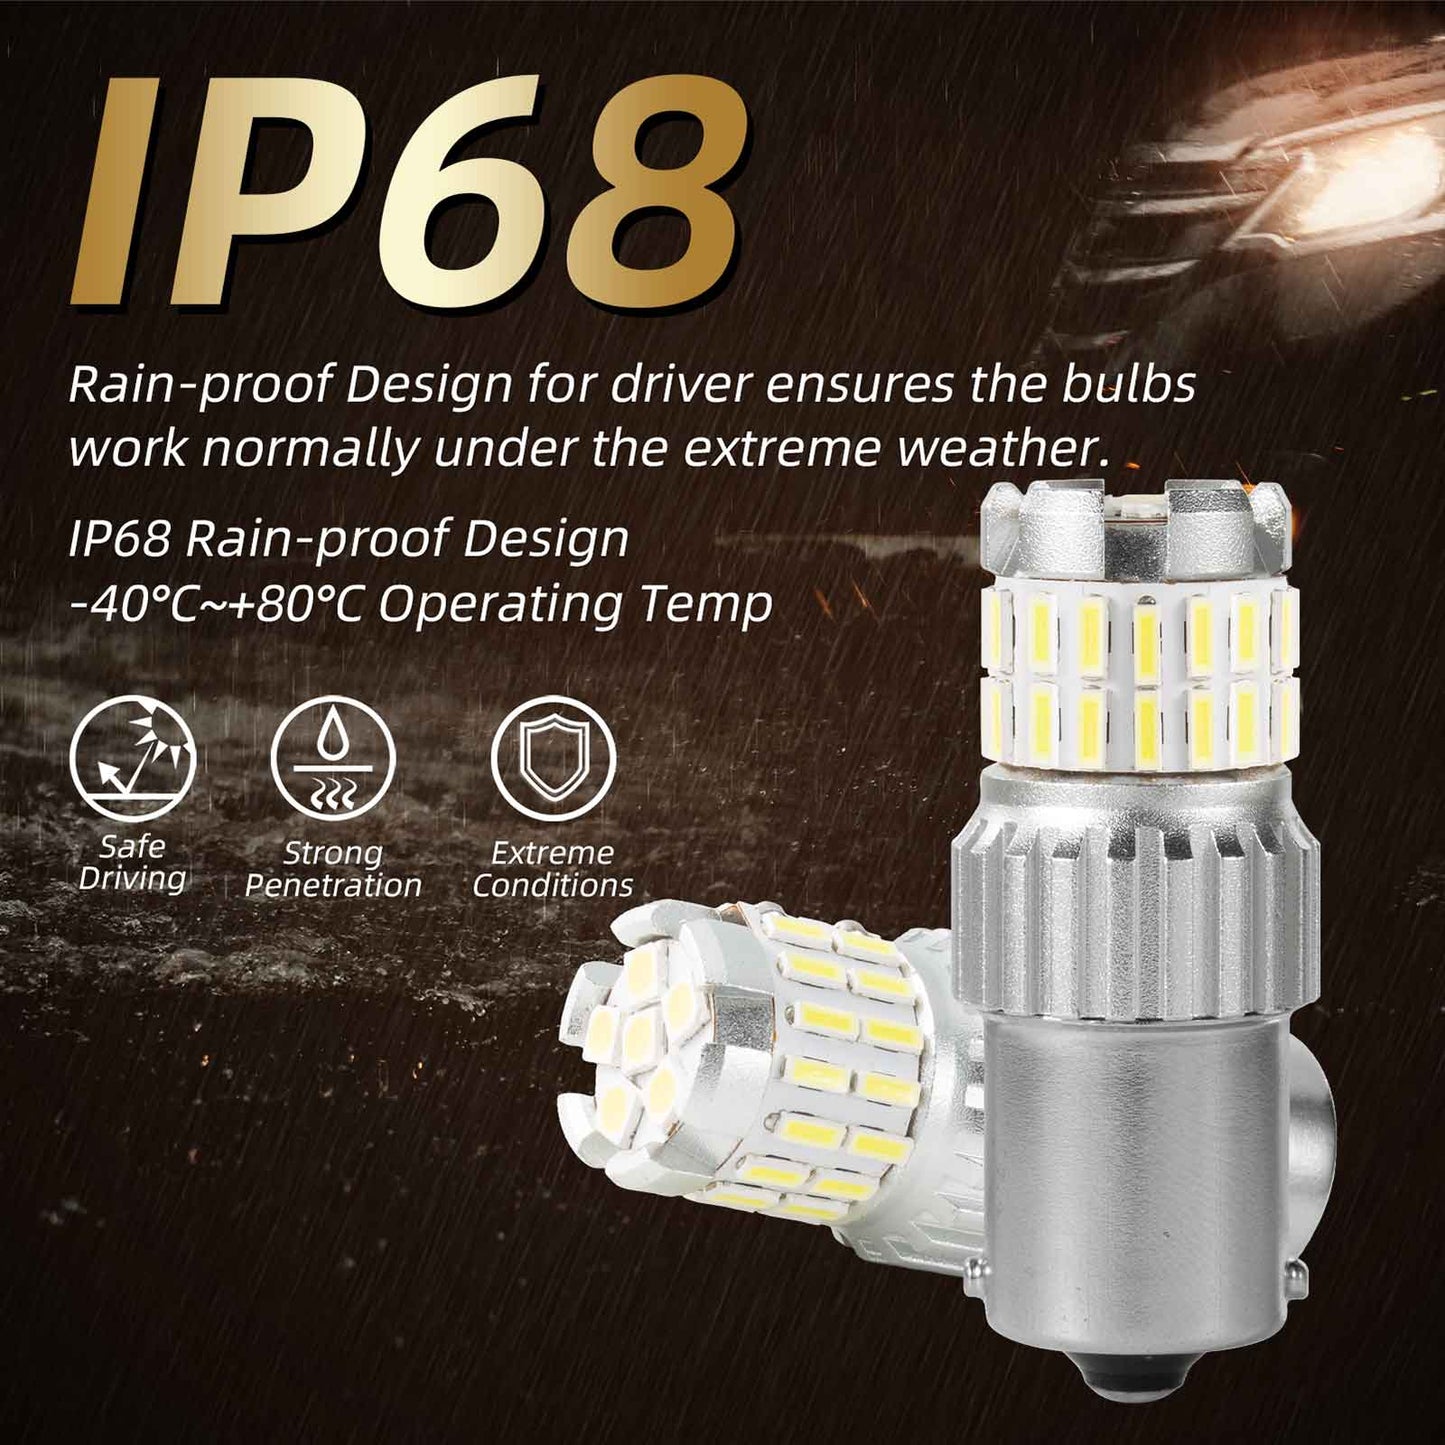 1156 BA15S 7506 P21W LED Brake Reverse Light Bulb Canbus Error Free 6500K White